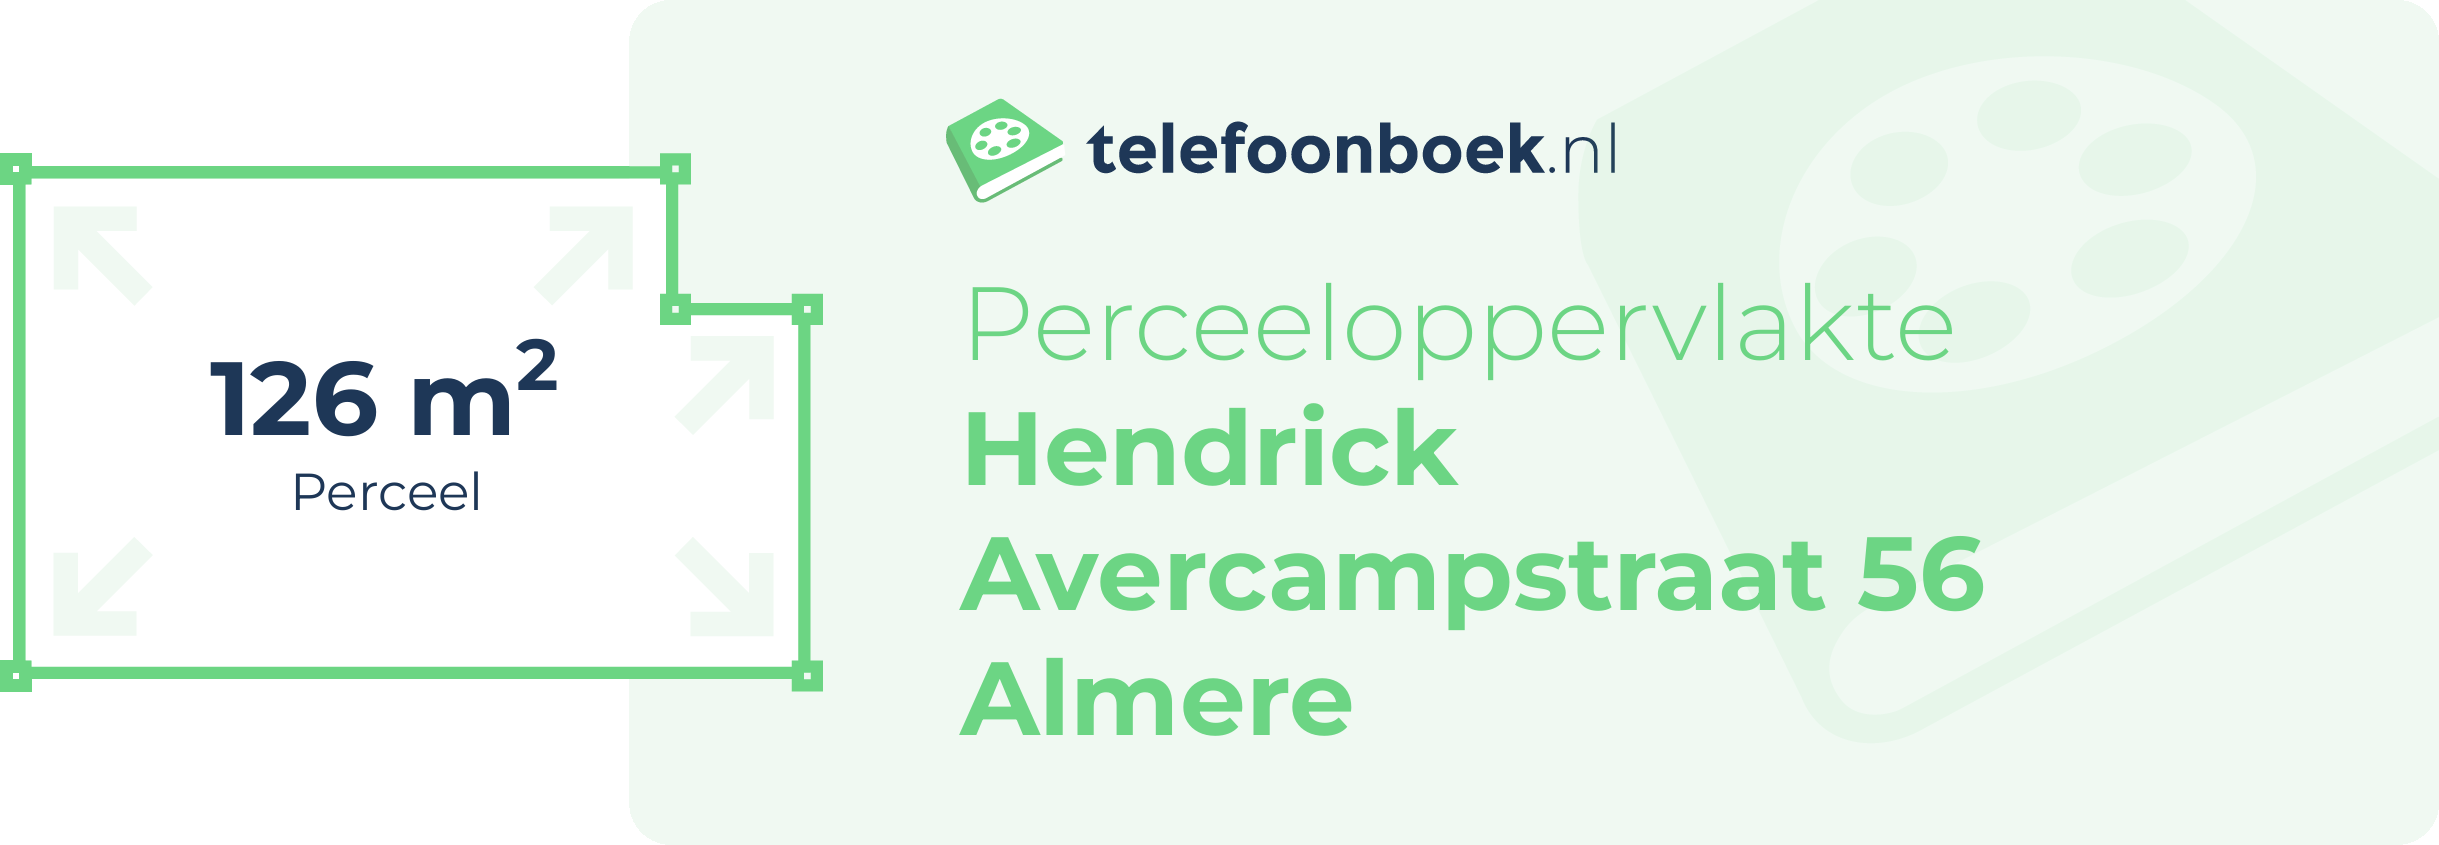 Perceeloppervlakte Hendrick Avercampstraat 56 Almere